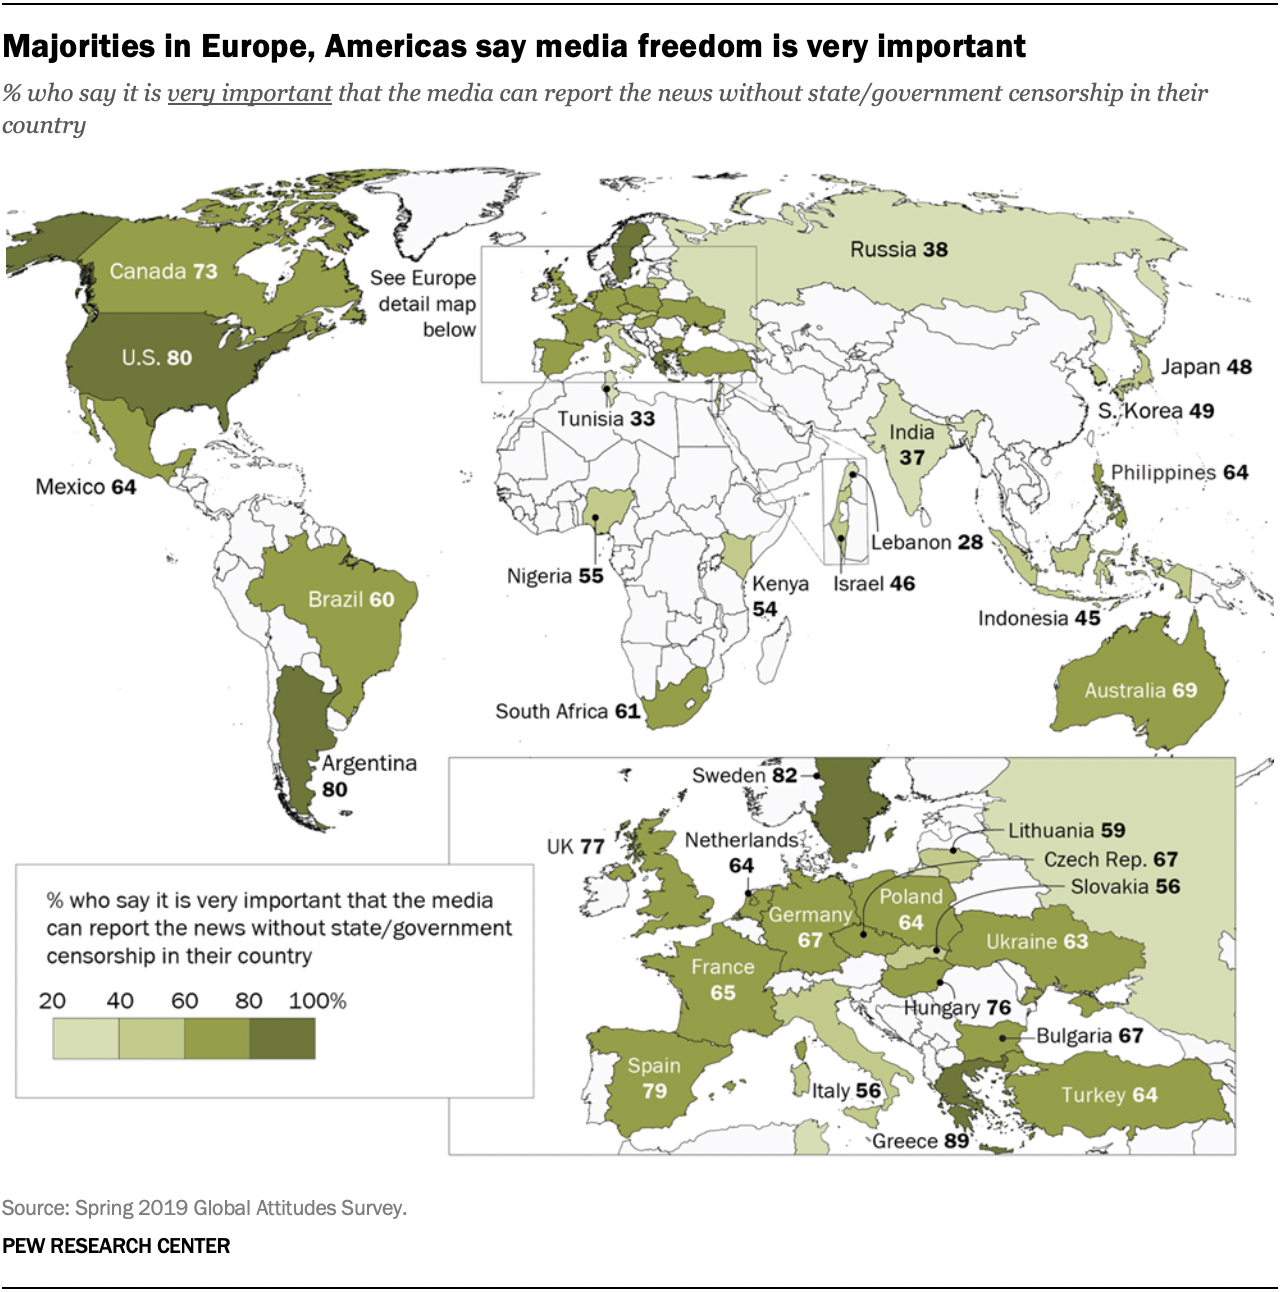 Majorities in Europe, Americas say media freedom is very important